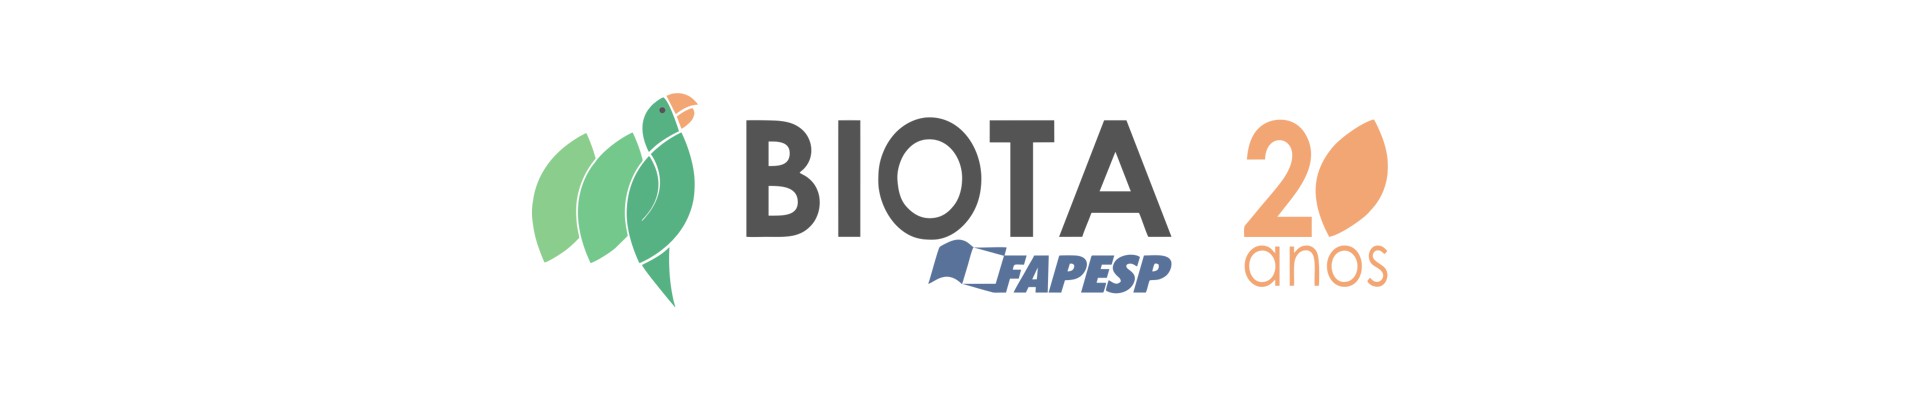 Biota/FAPESP logo 20 years